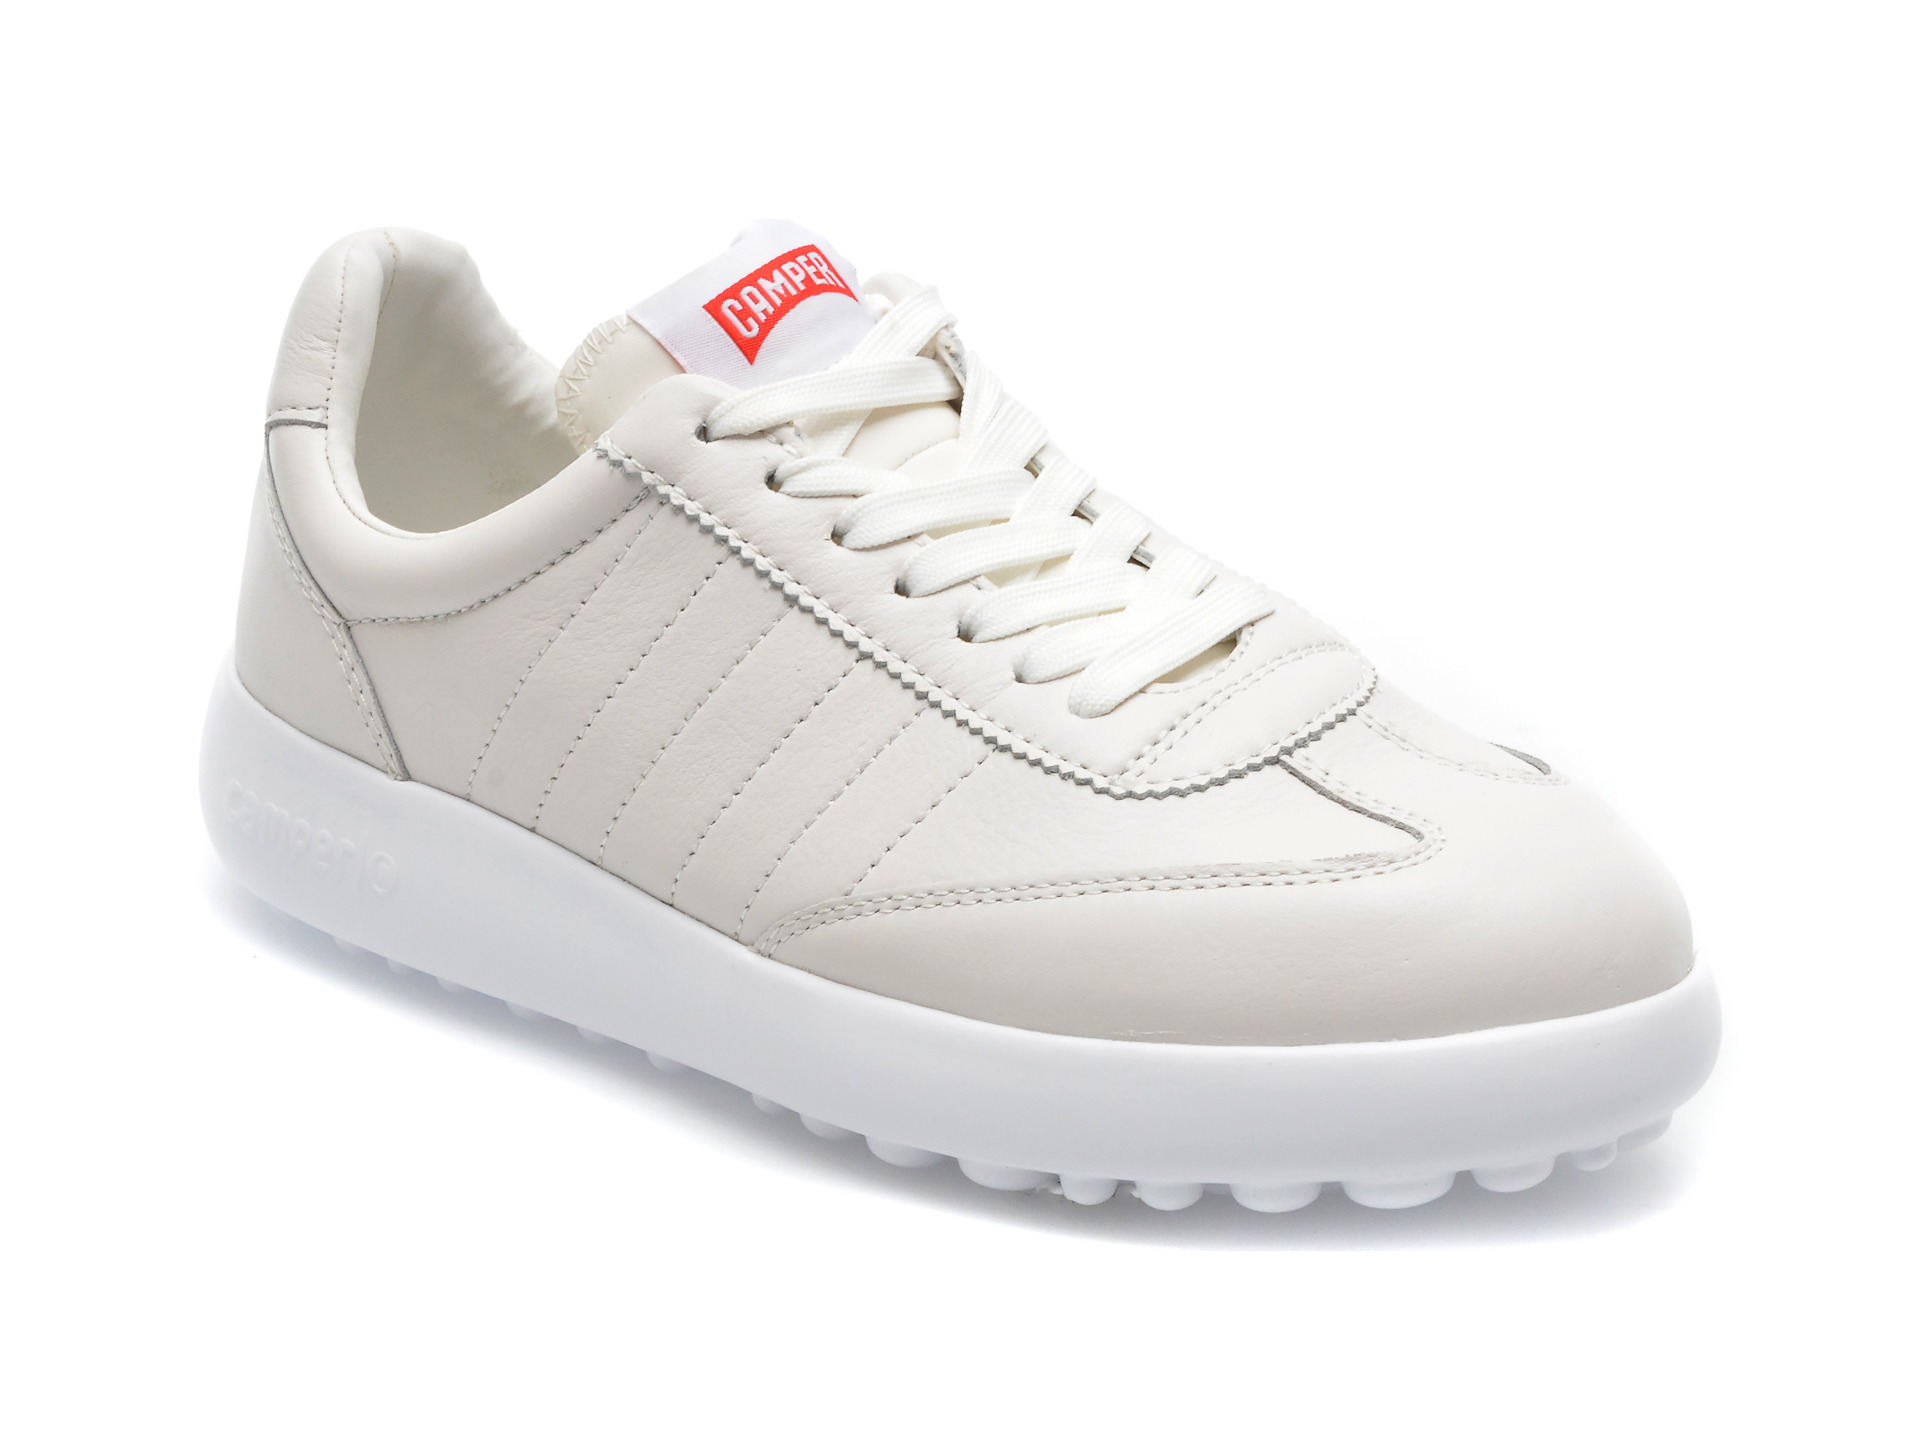 Pantofi sport CAMPER albi, K201060, din piele naturala